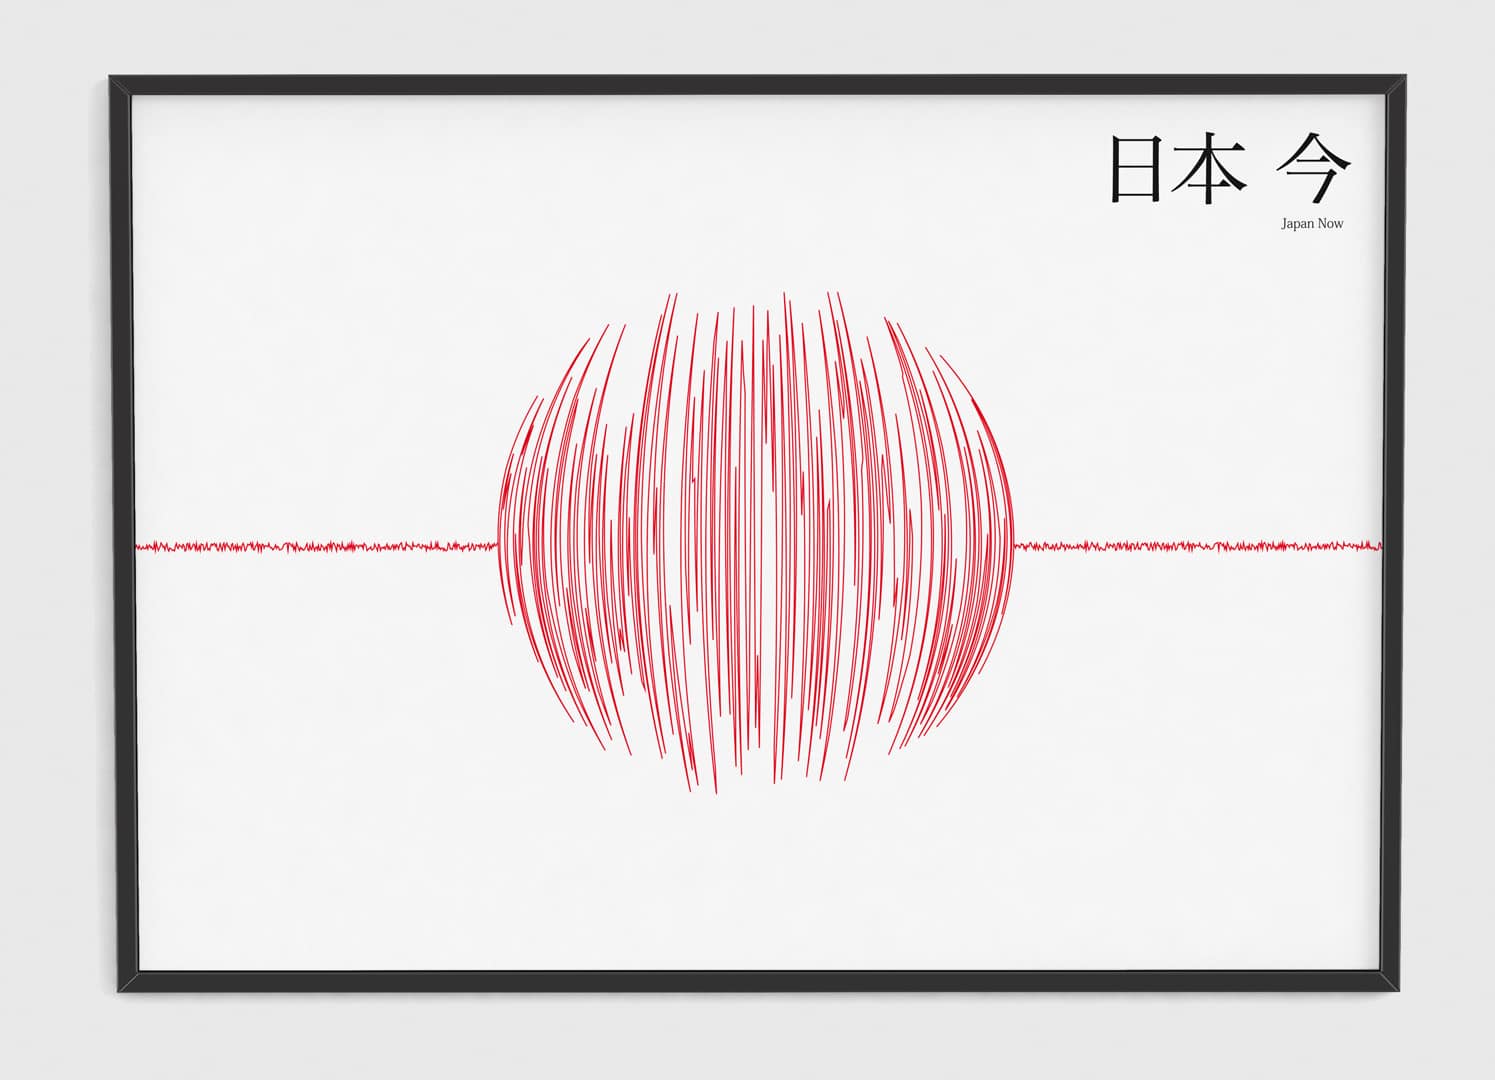 Poster Japan Now – Erdbeben